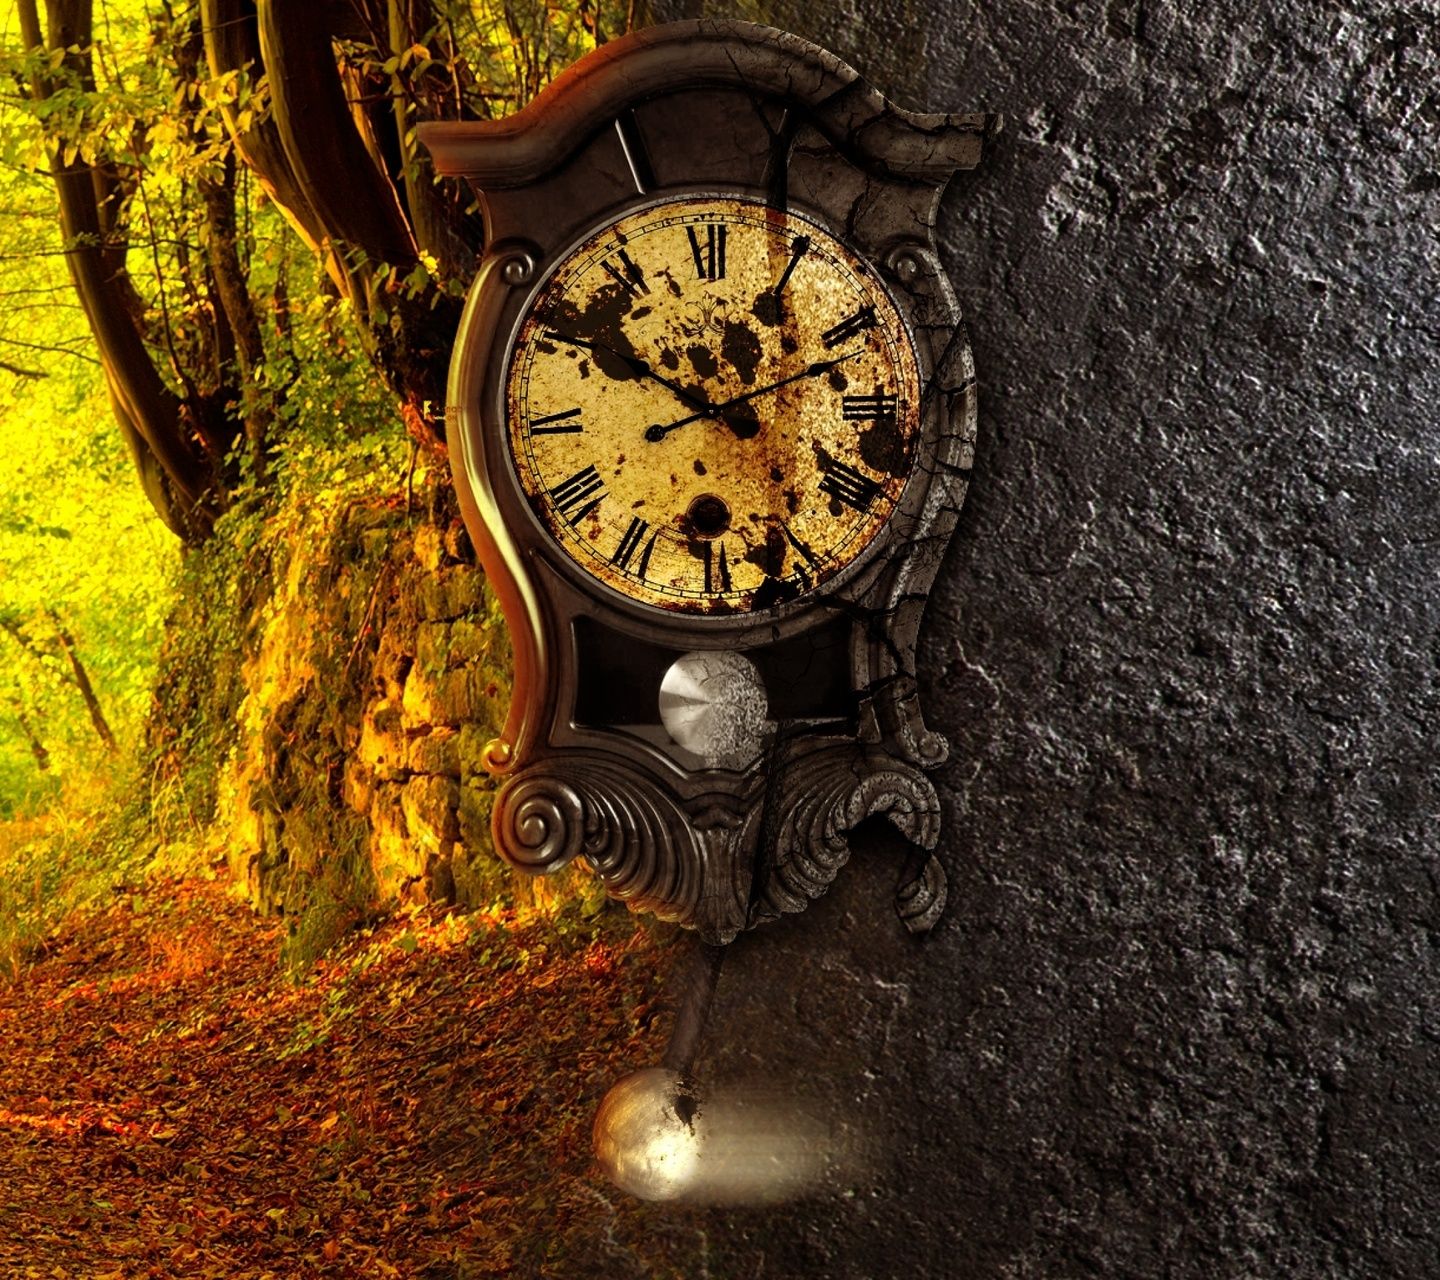 fond d'écran d'horloge mobile,l'horloge,boussole,arbre,horloge murale,photographie de nature morte